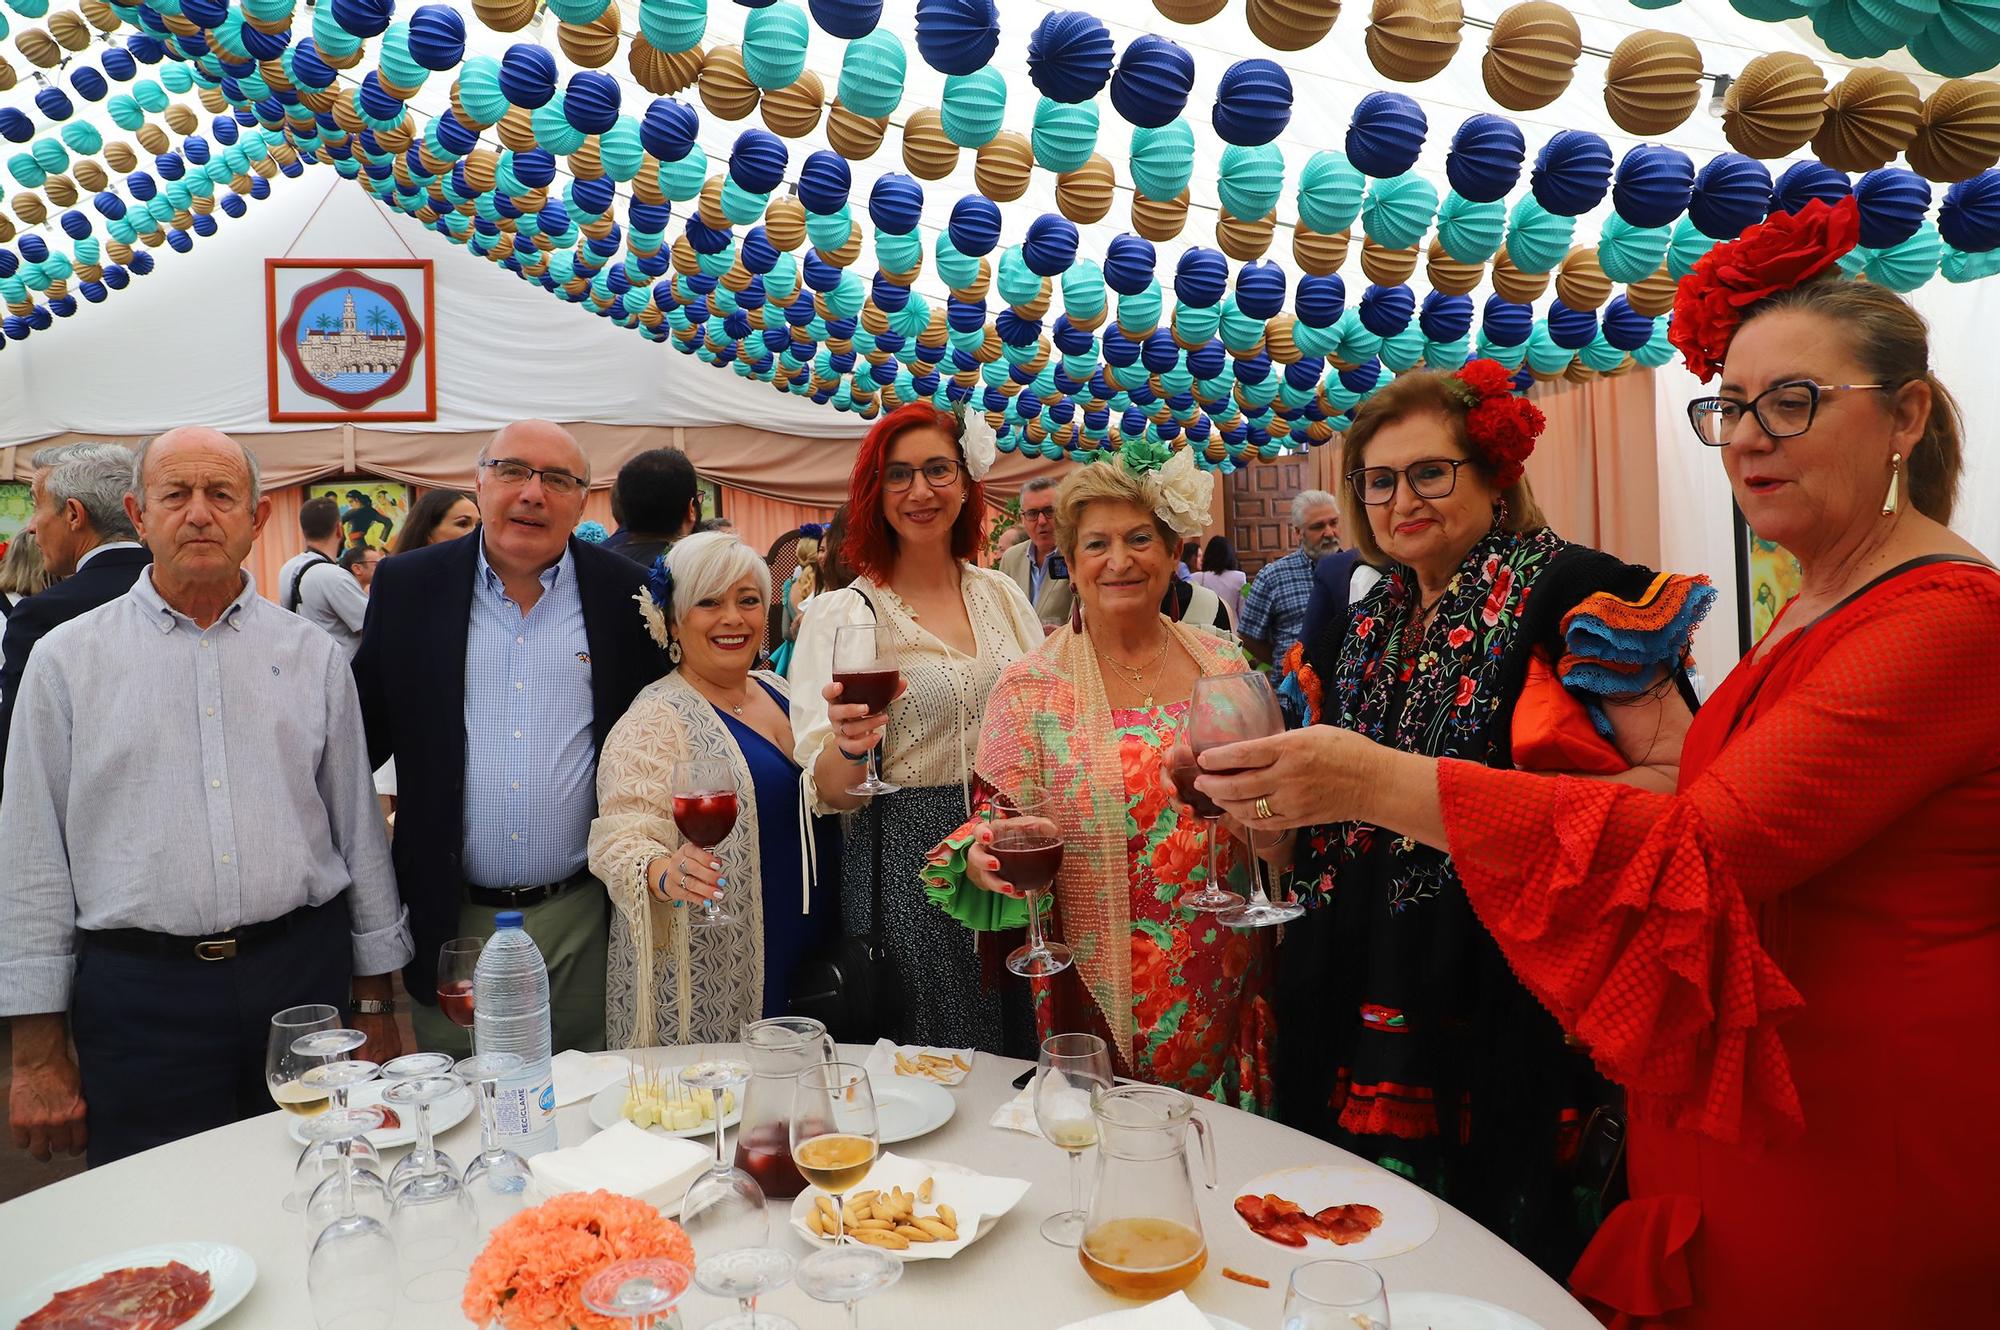 La recepción de Feria del Ayuntamiento de Córdoba en imágenes